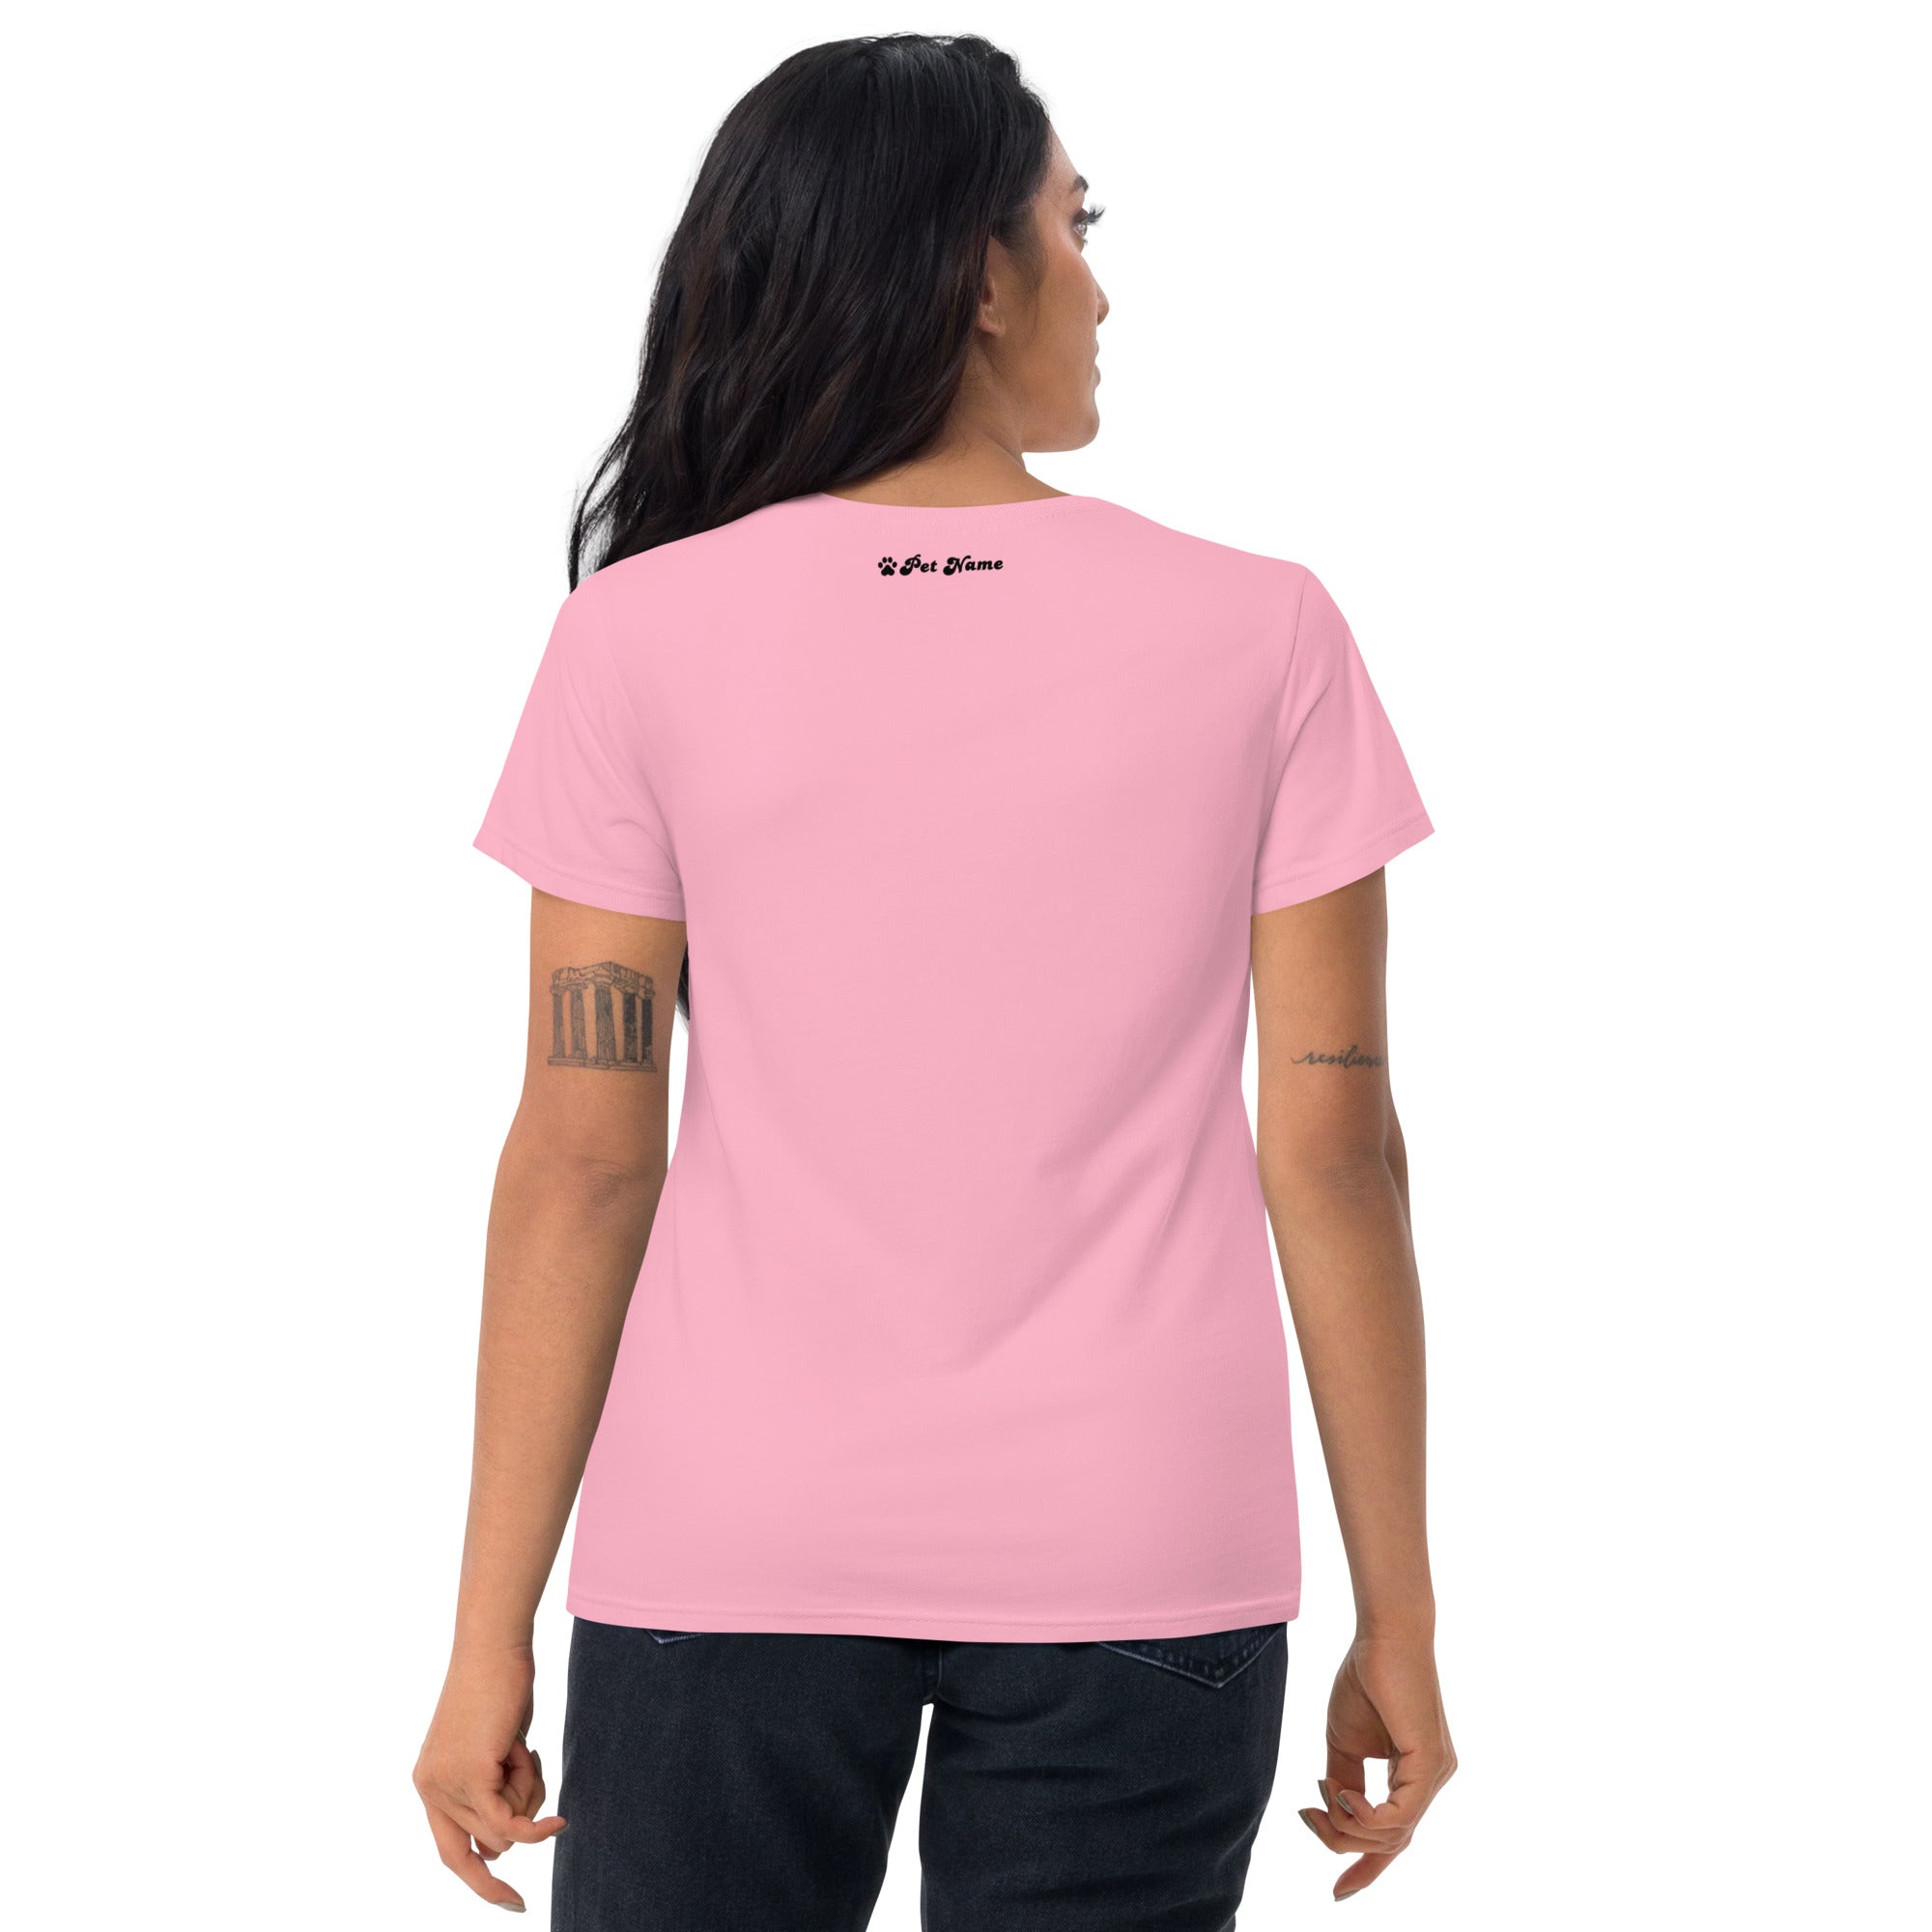 Maltese Women's short sleeve t-shirt